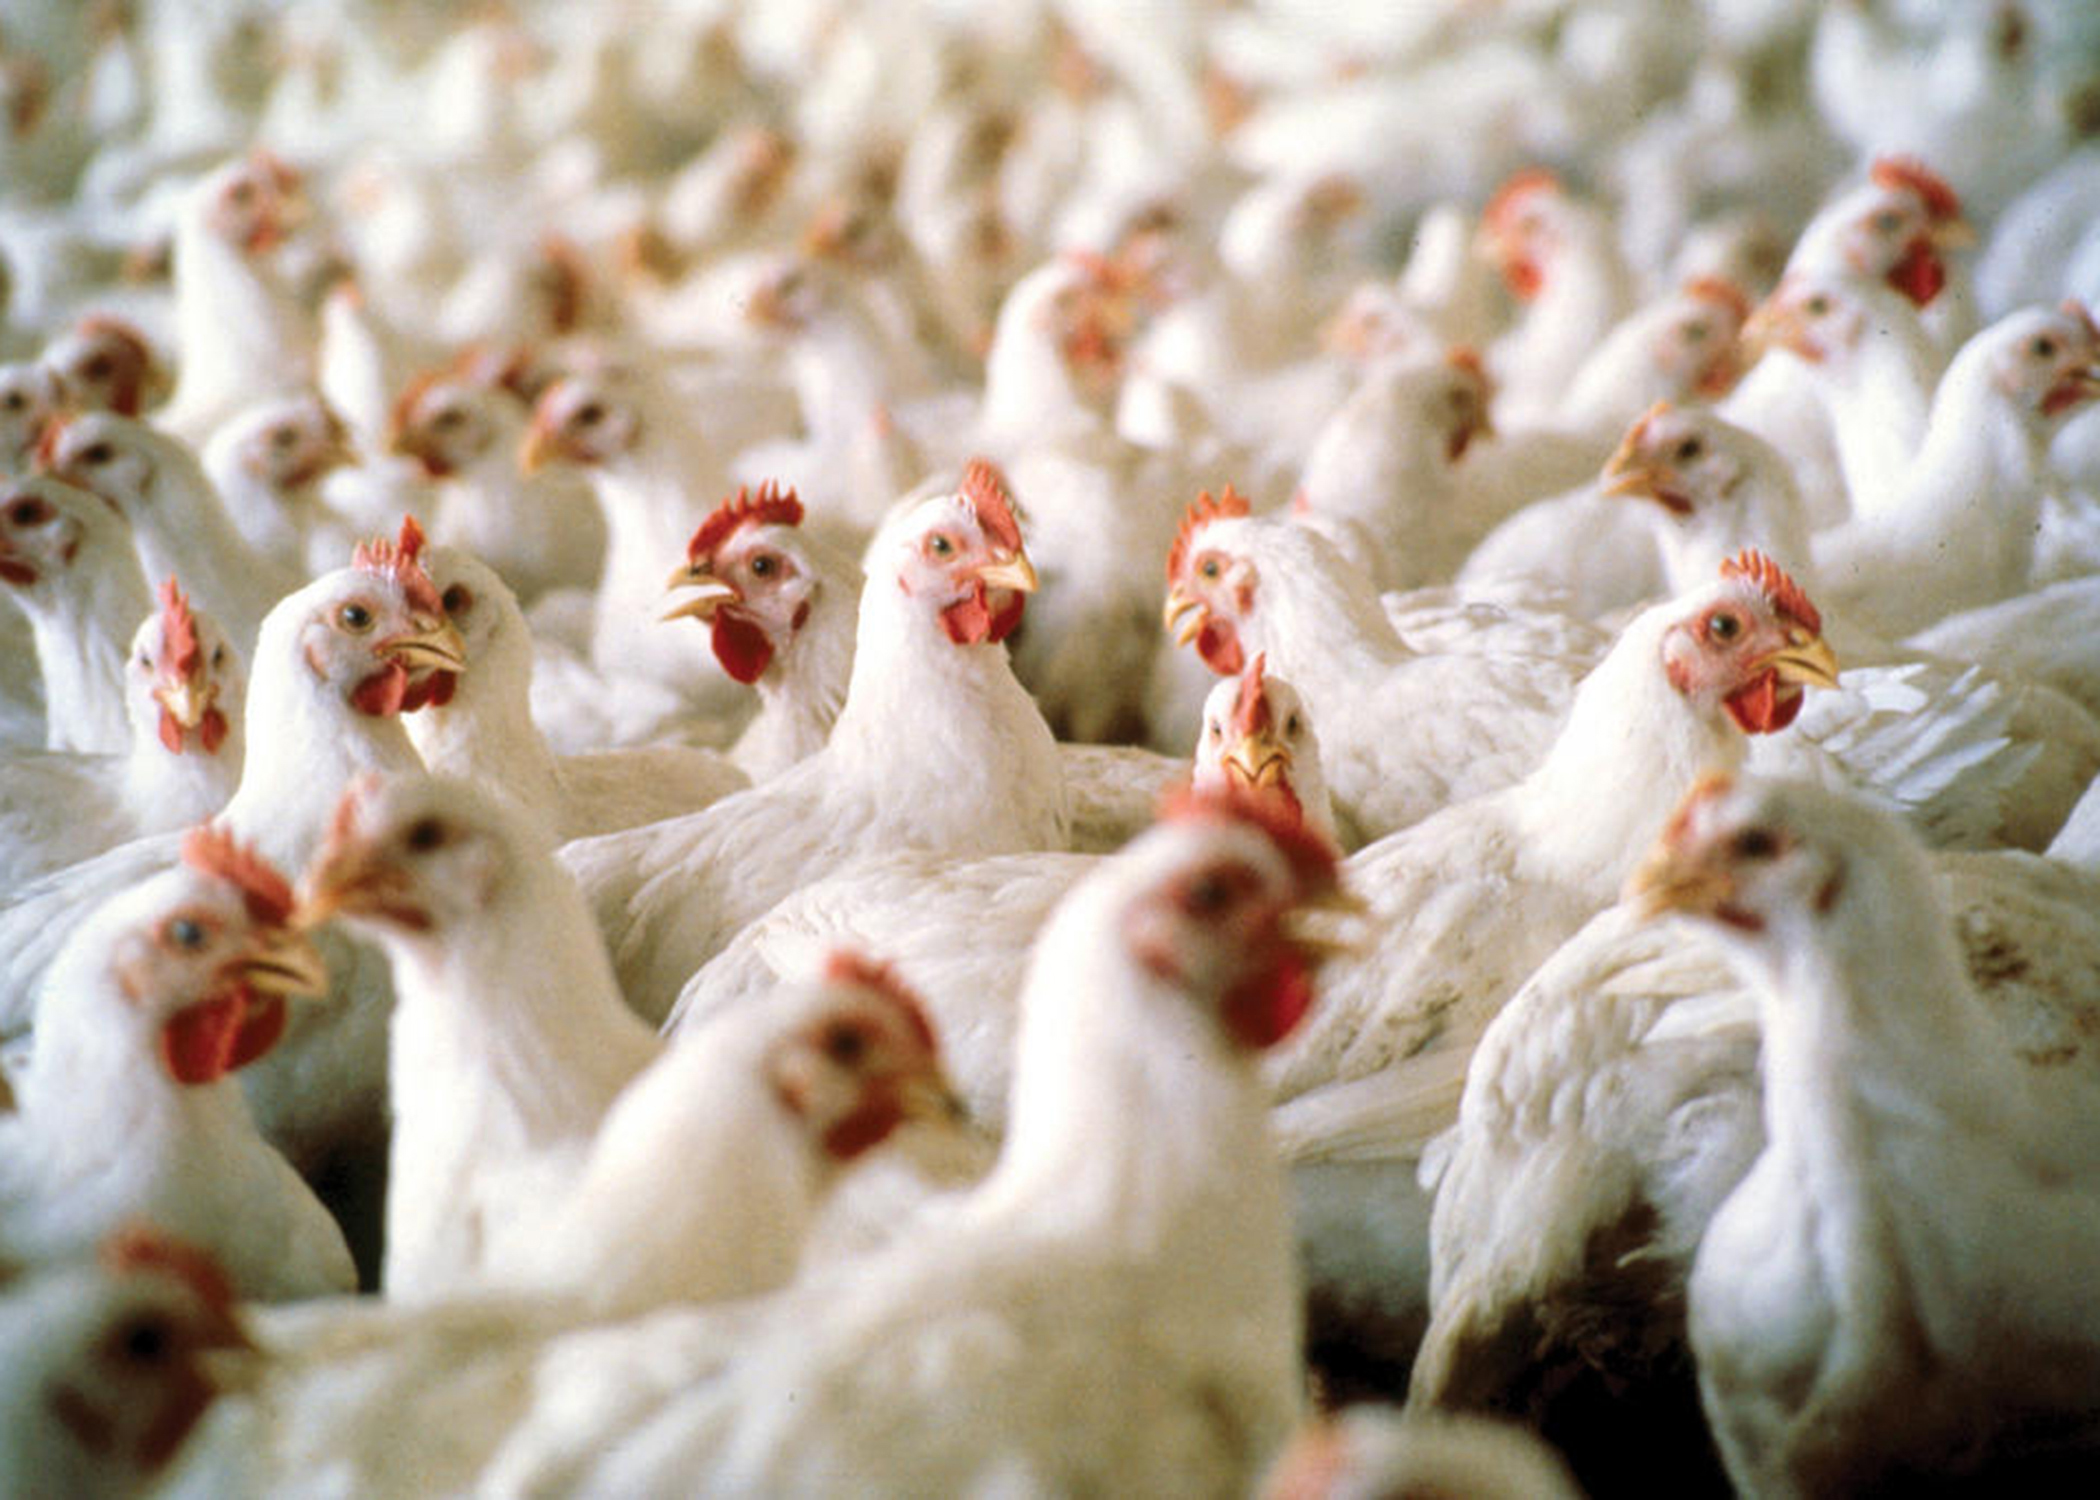 RÃ©cord histÃ³rico: las exportaciones argentinas de pollos superan en casi un 140% a las de carne bovina